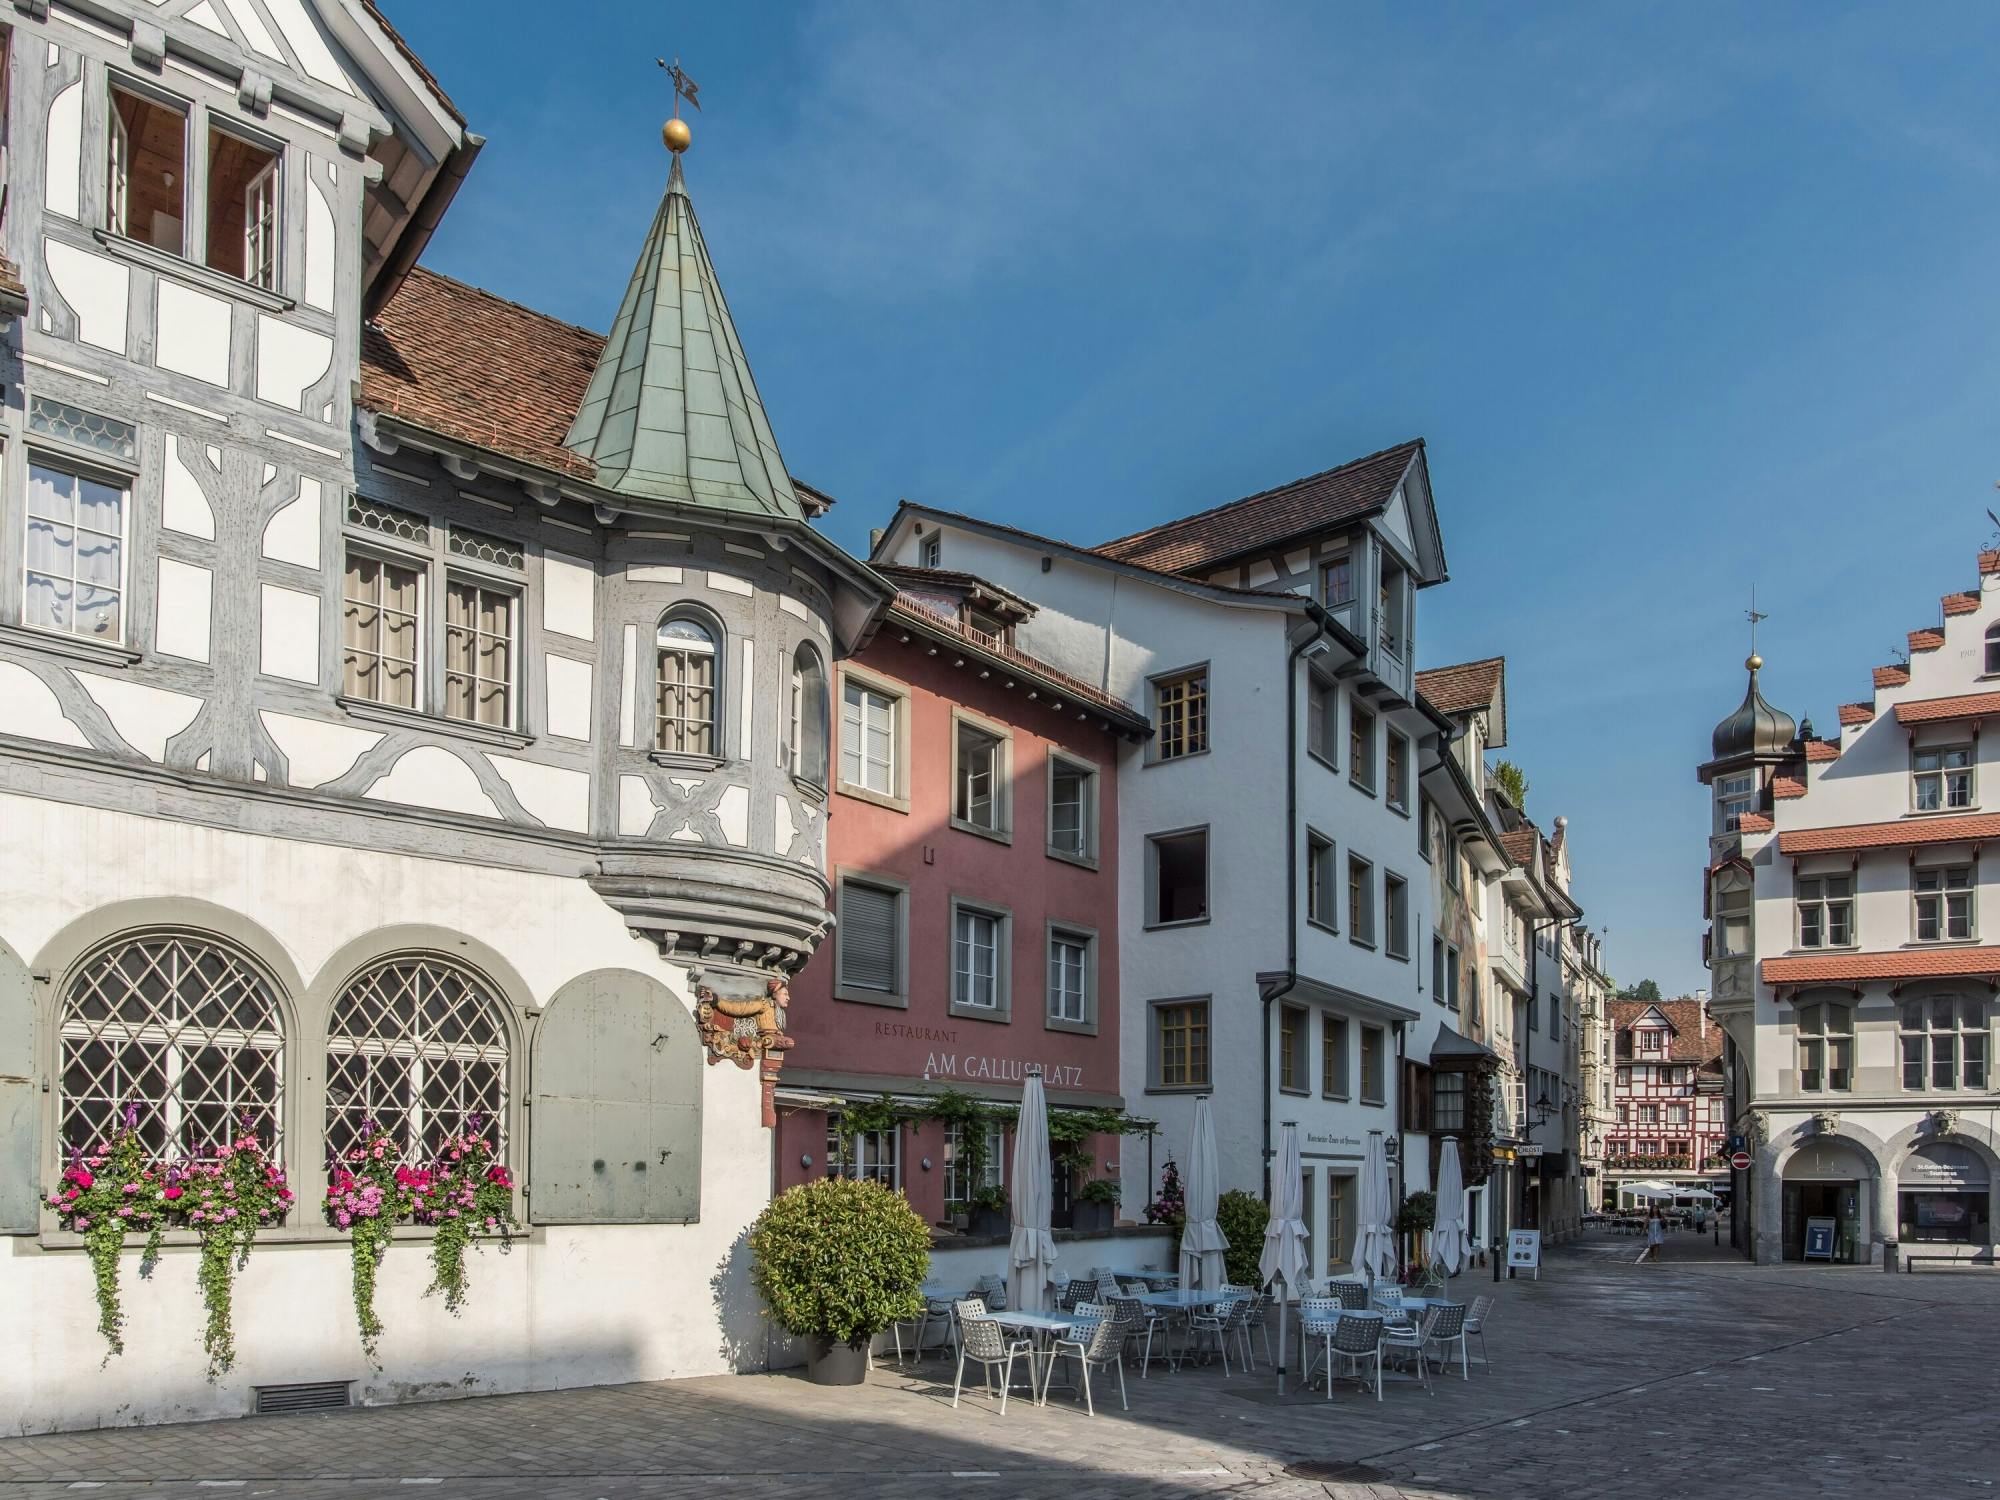 Wycieczka piesza po Starym Mieście w St.Gallen